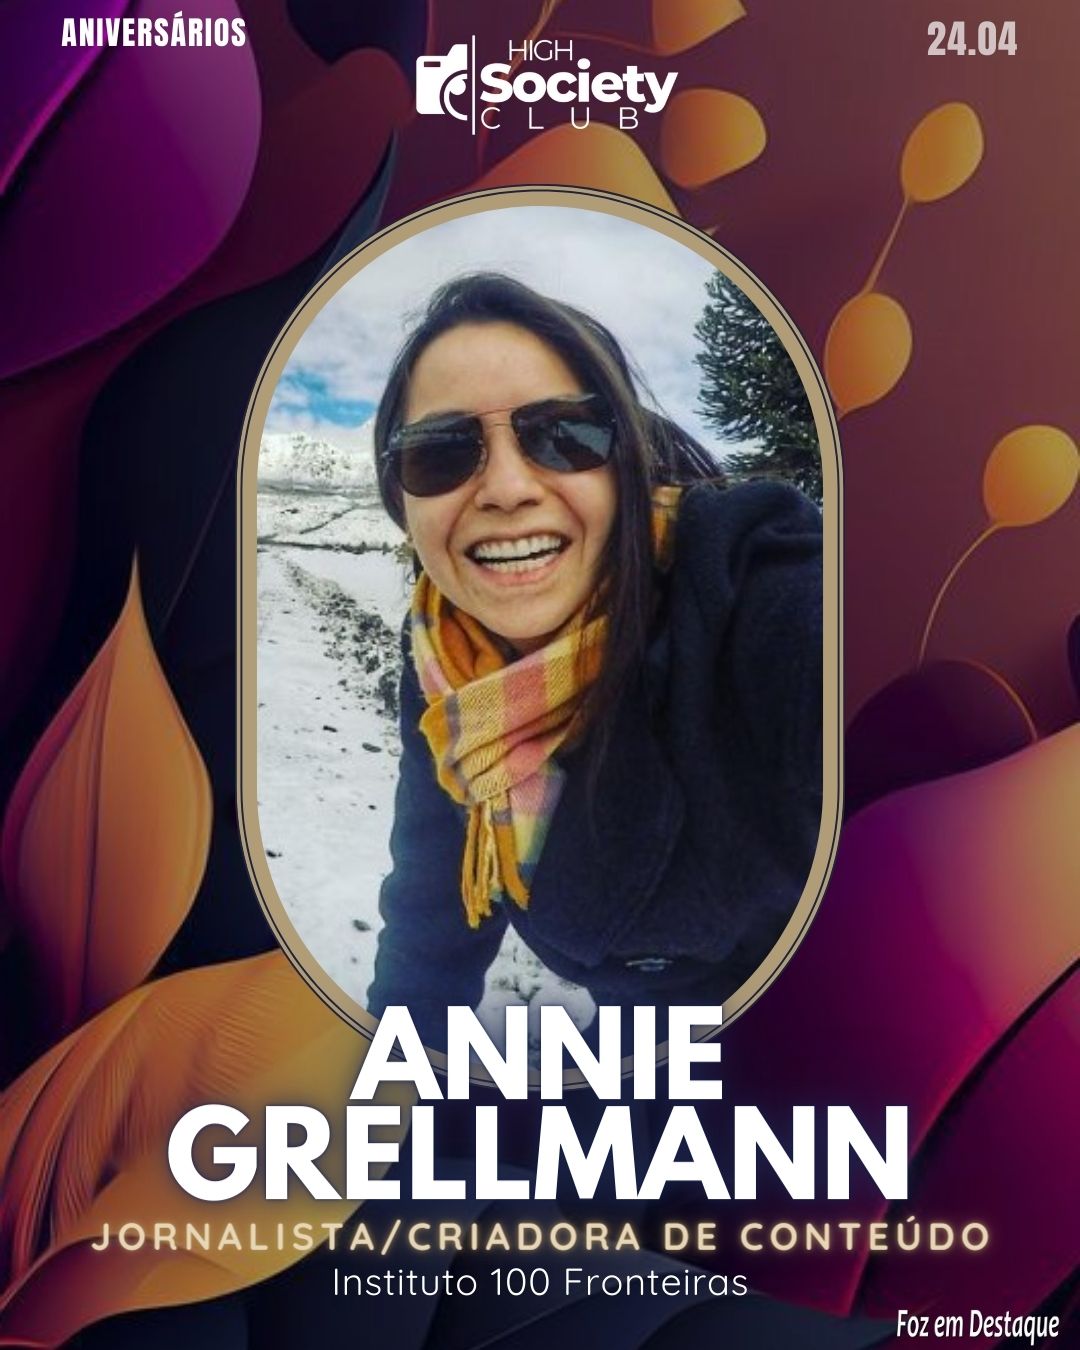 Annie Grellmann - Jornalista/Criadora de Conteúdo - Instituto 100 Fronteiras
 High Society Club Foz em Destaque